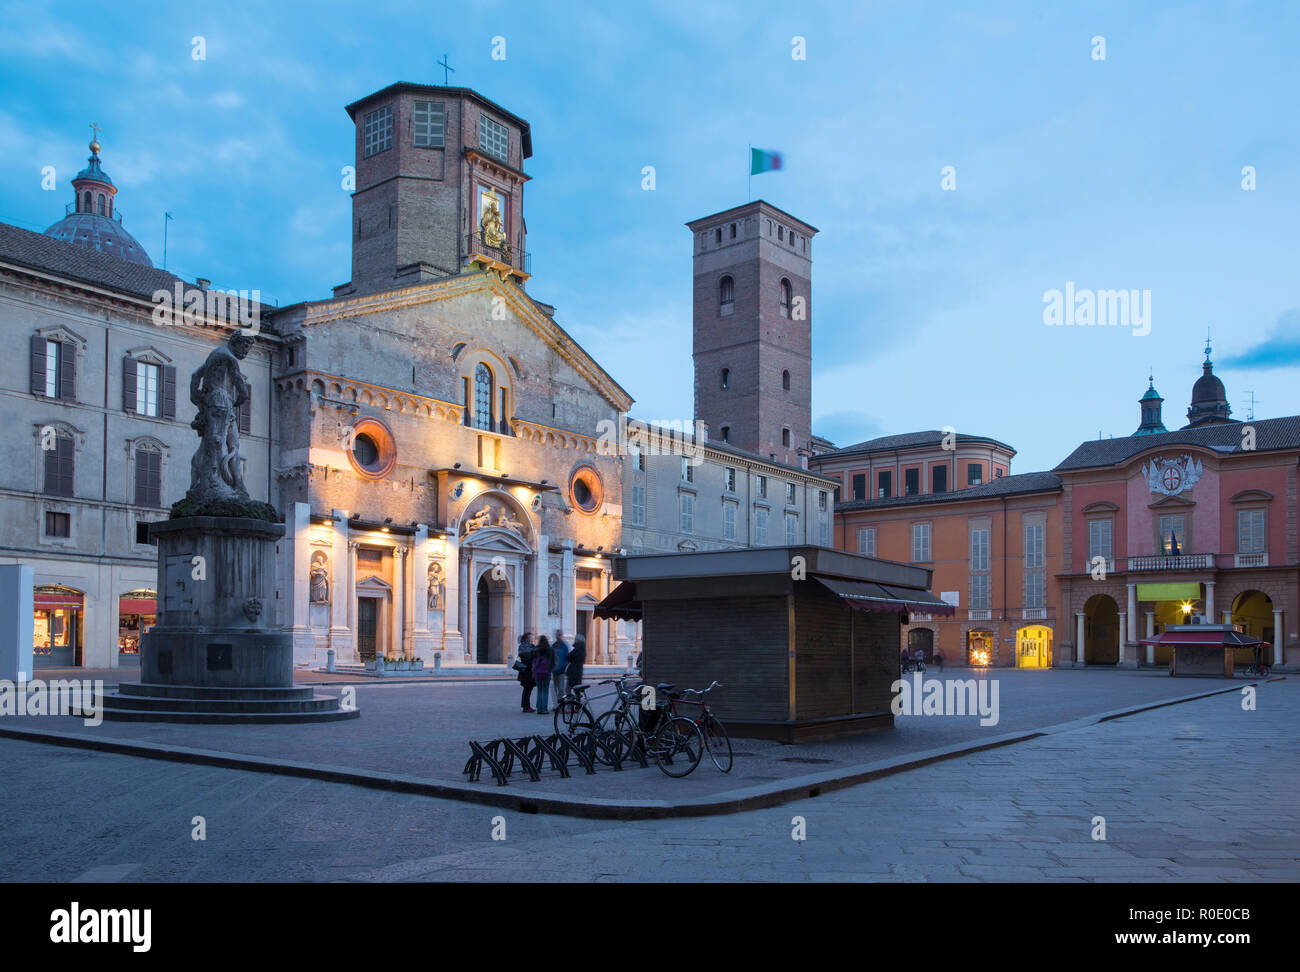 Reggio Emilia  - The square Piazza del Duomo at dusk. Stock Photo